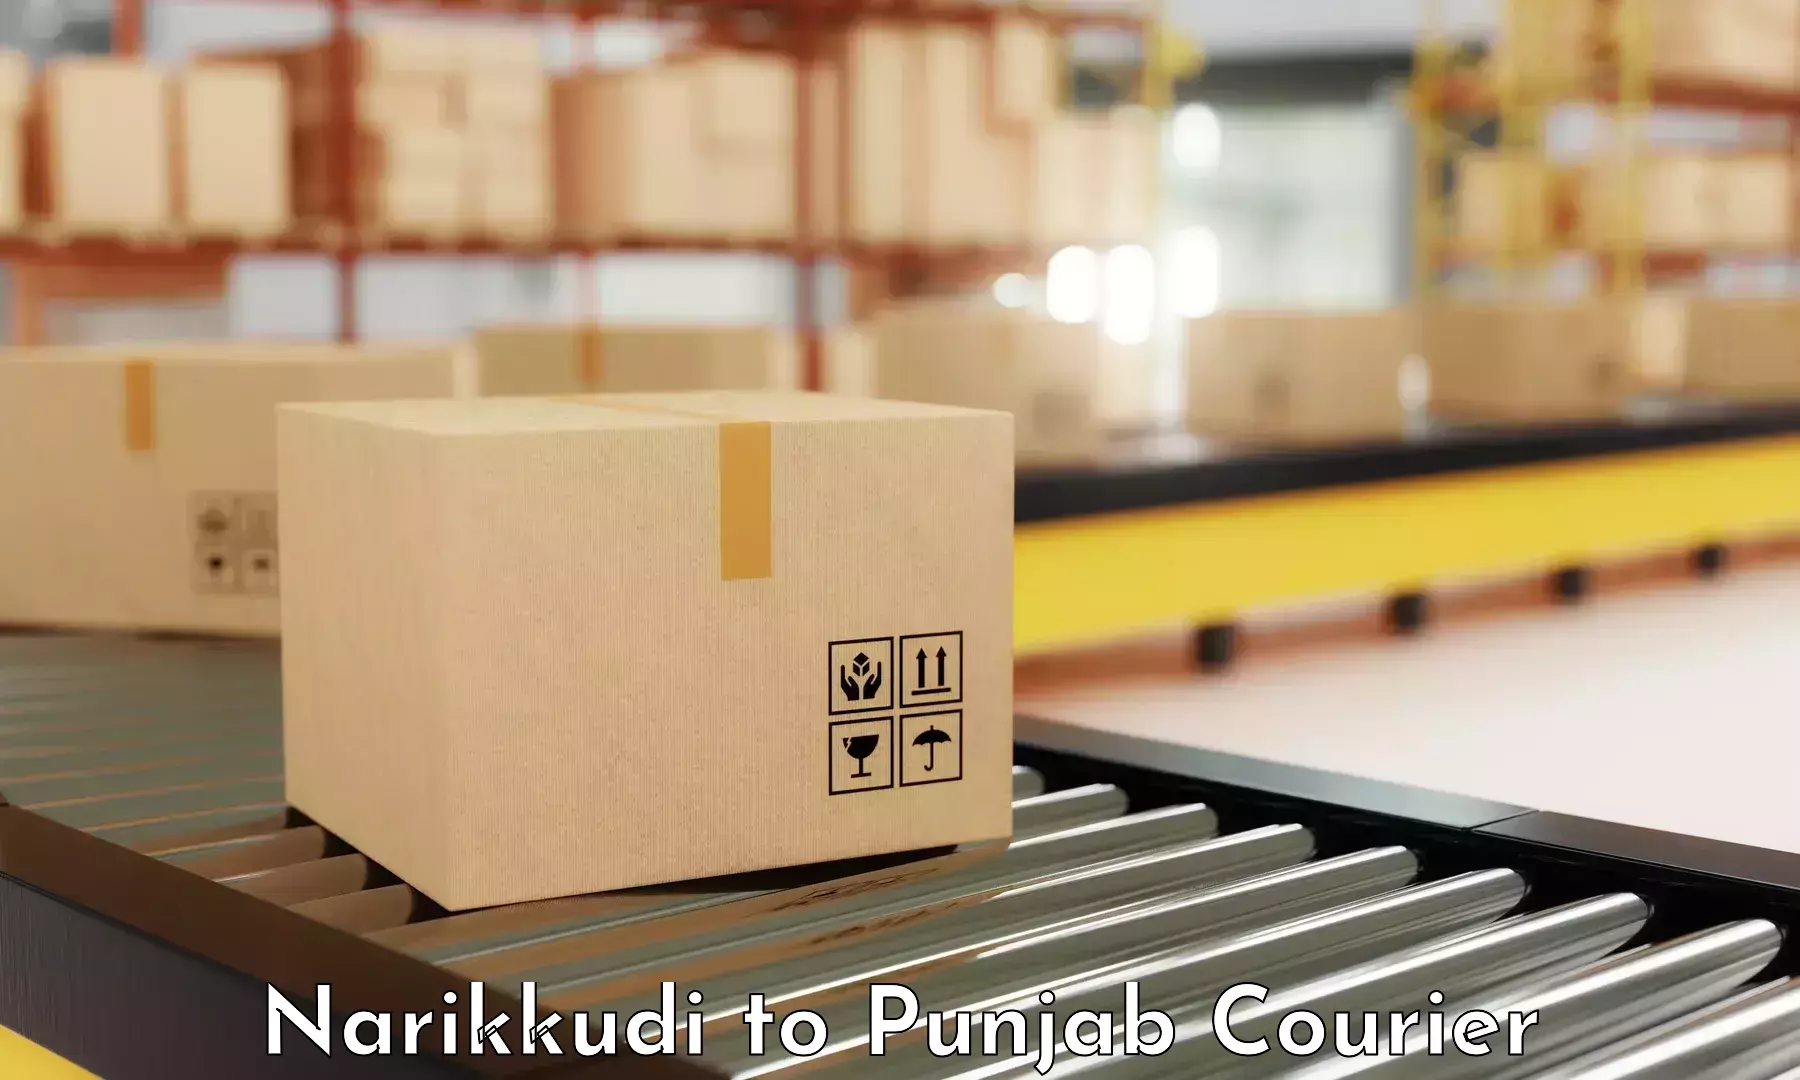 Regular parcel service Narikkudi to Central University of Punjab Bathinda